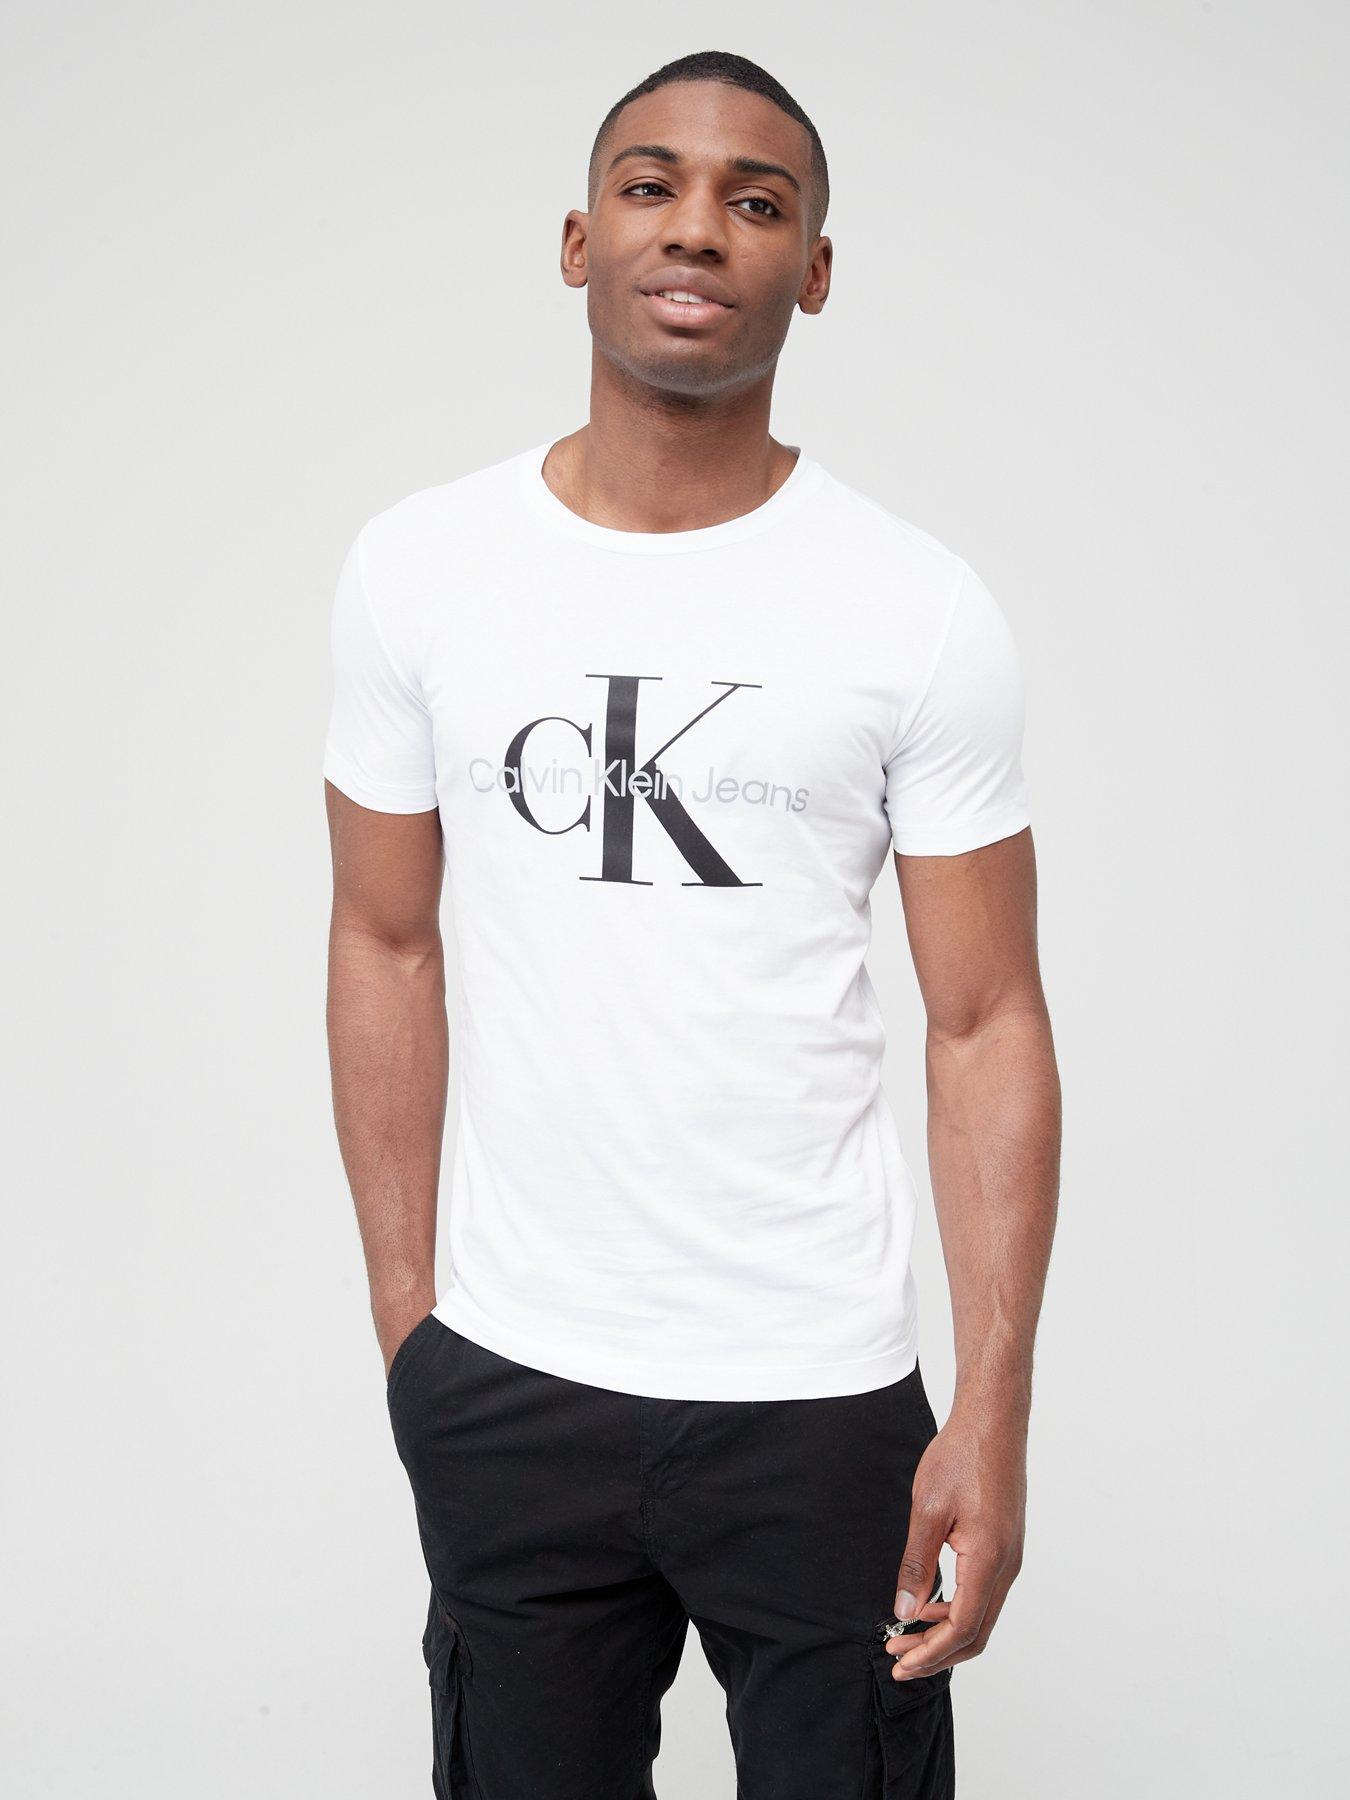 Calvin Klein Men's Regular Fit Short Sleeve T Shirt Monogram Logo